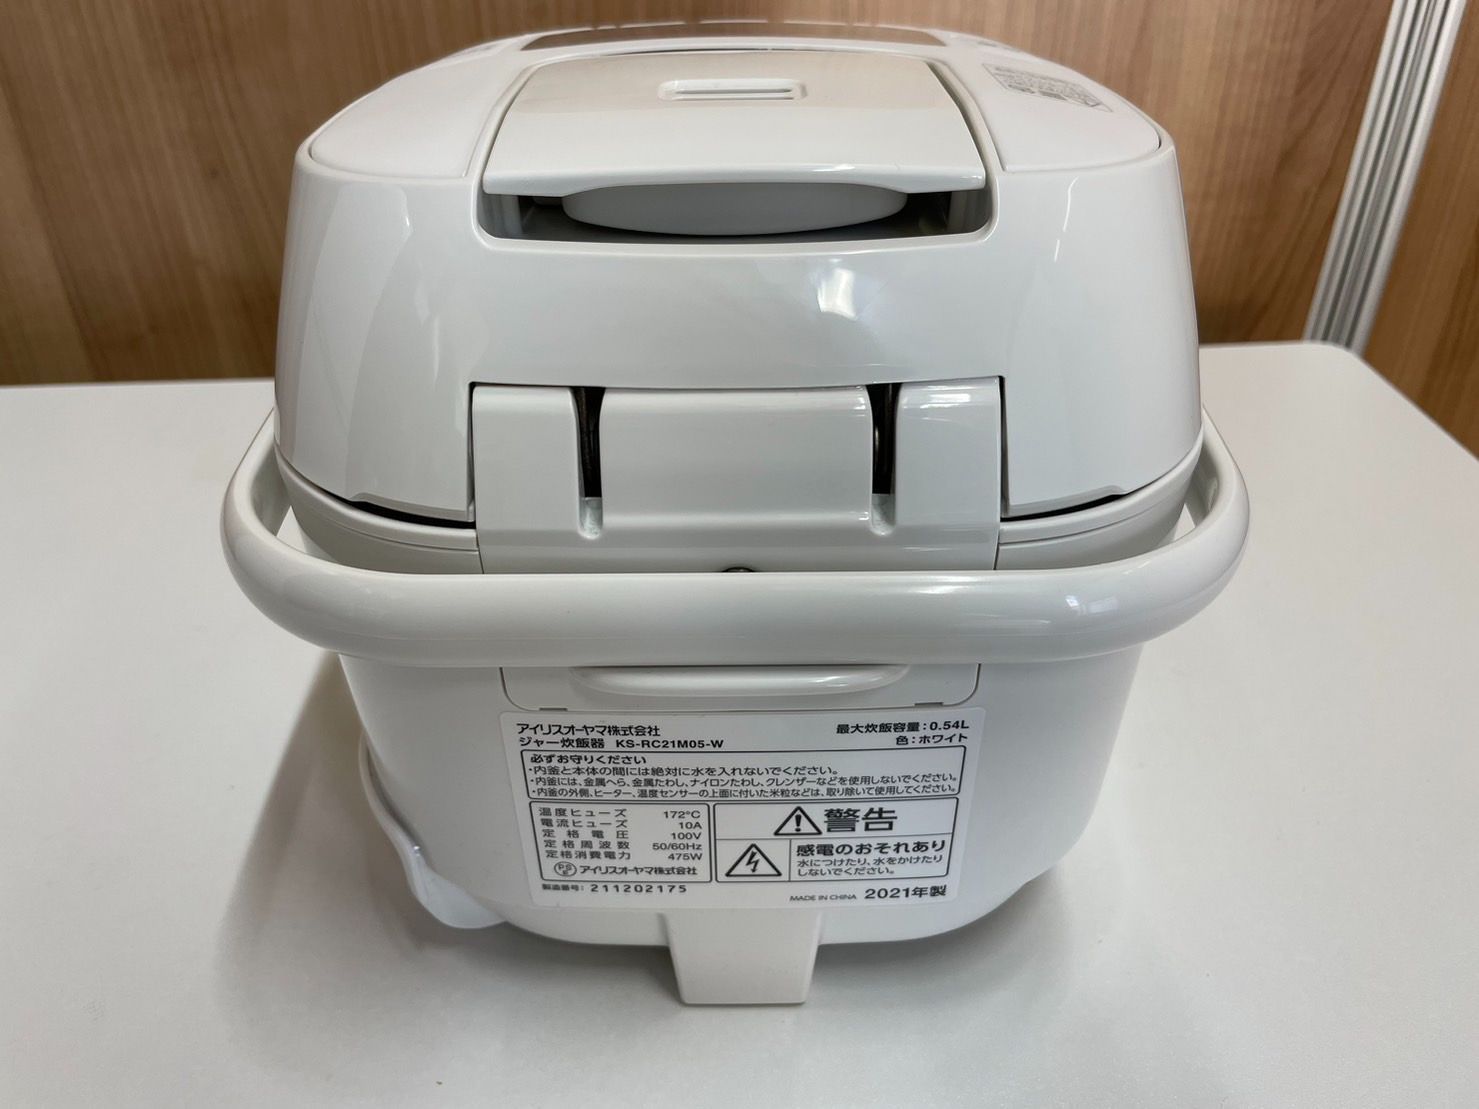 中古美品】アイリスオーヤマ 炊飯器 KS-RC21M05-W 2021年製 3合炊き